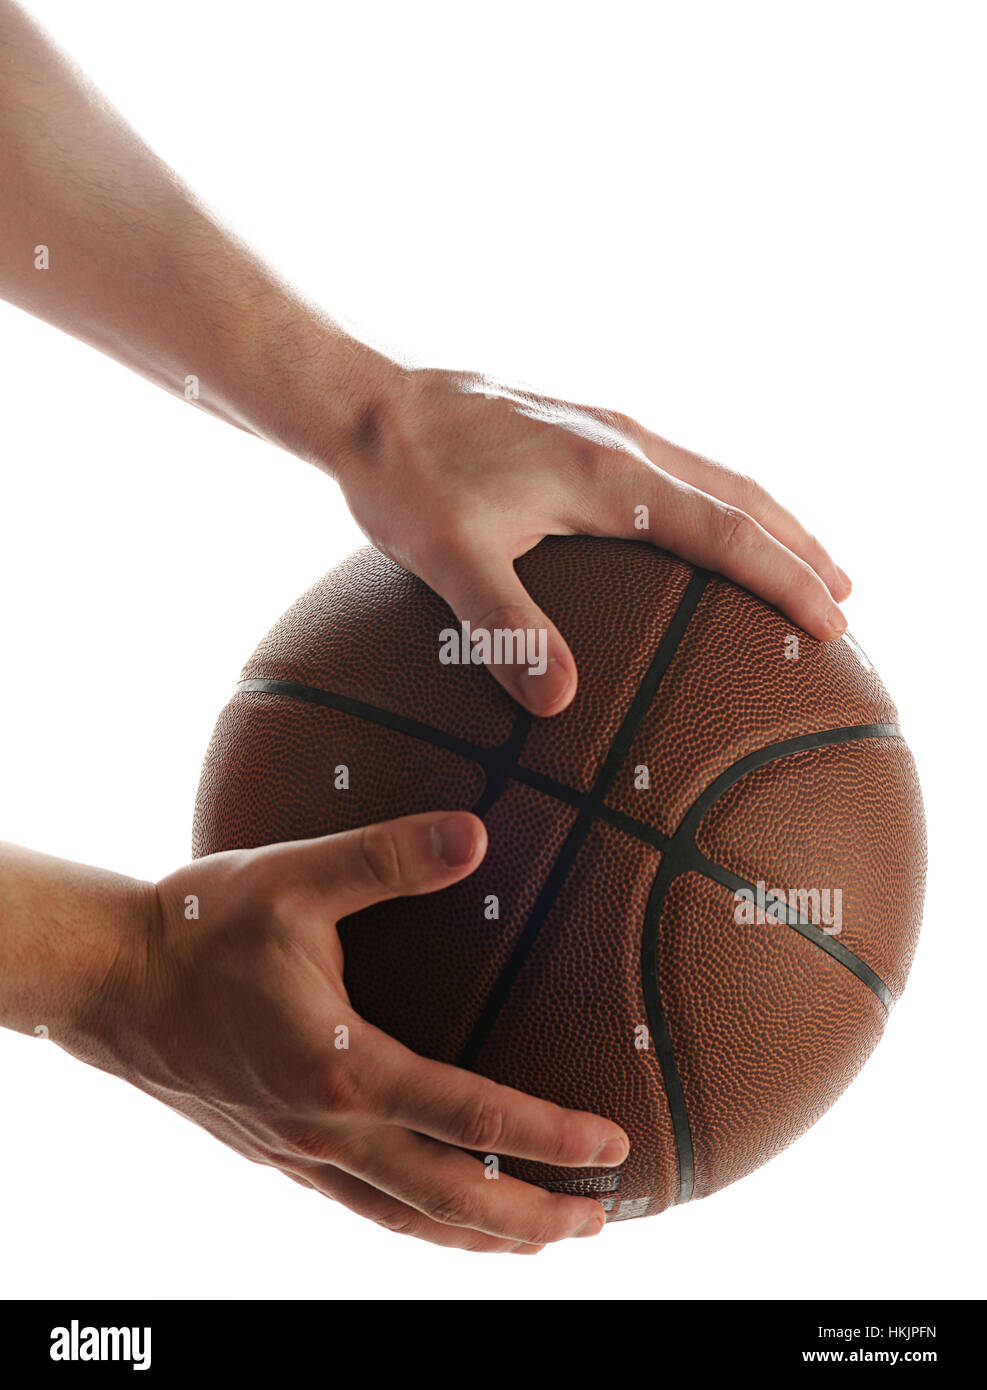 Mantenga pelota de baloncesto aislado sobre fondo blanco. Foto de stock